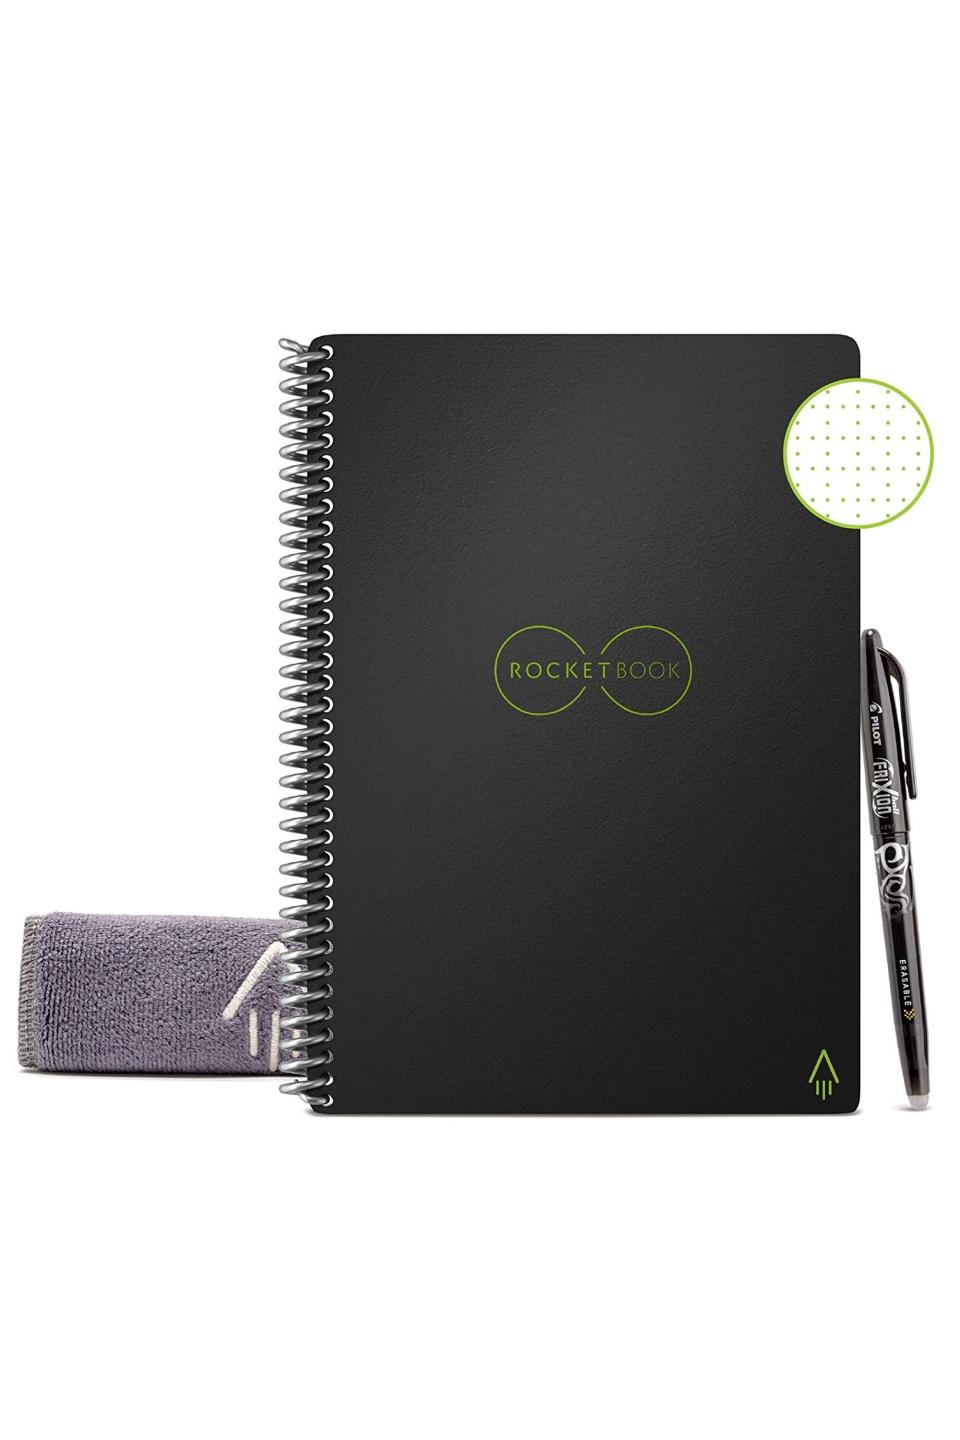 2) Smart Reusable Notebook